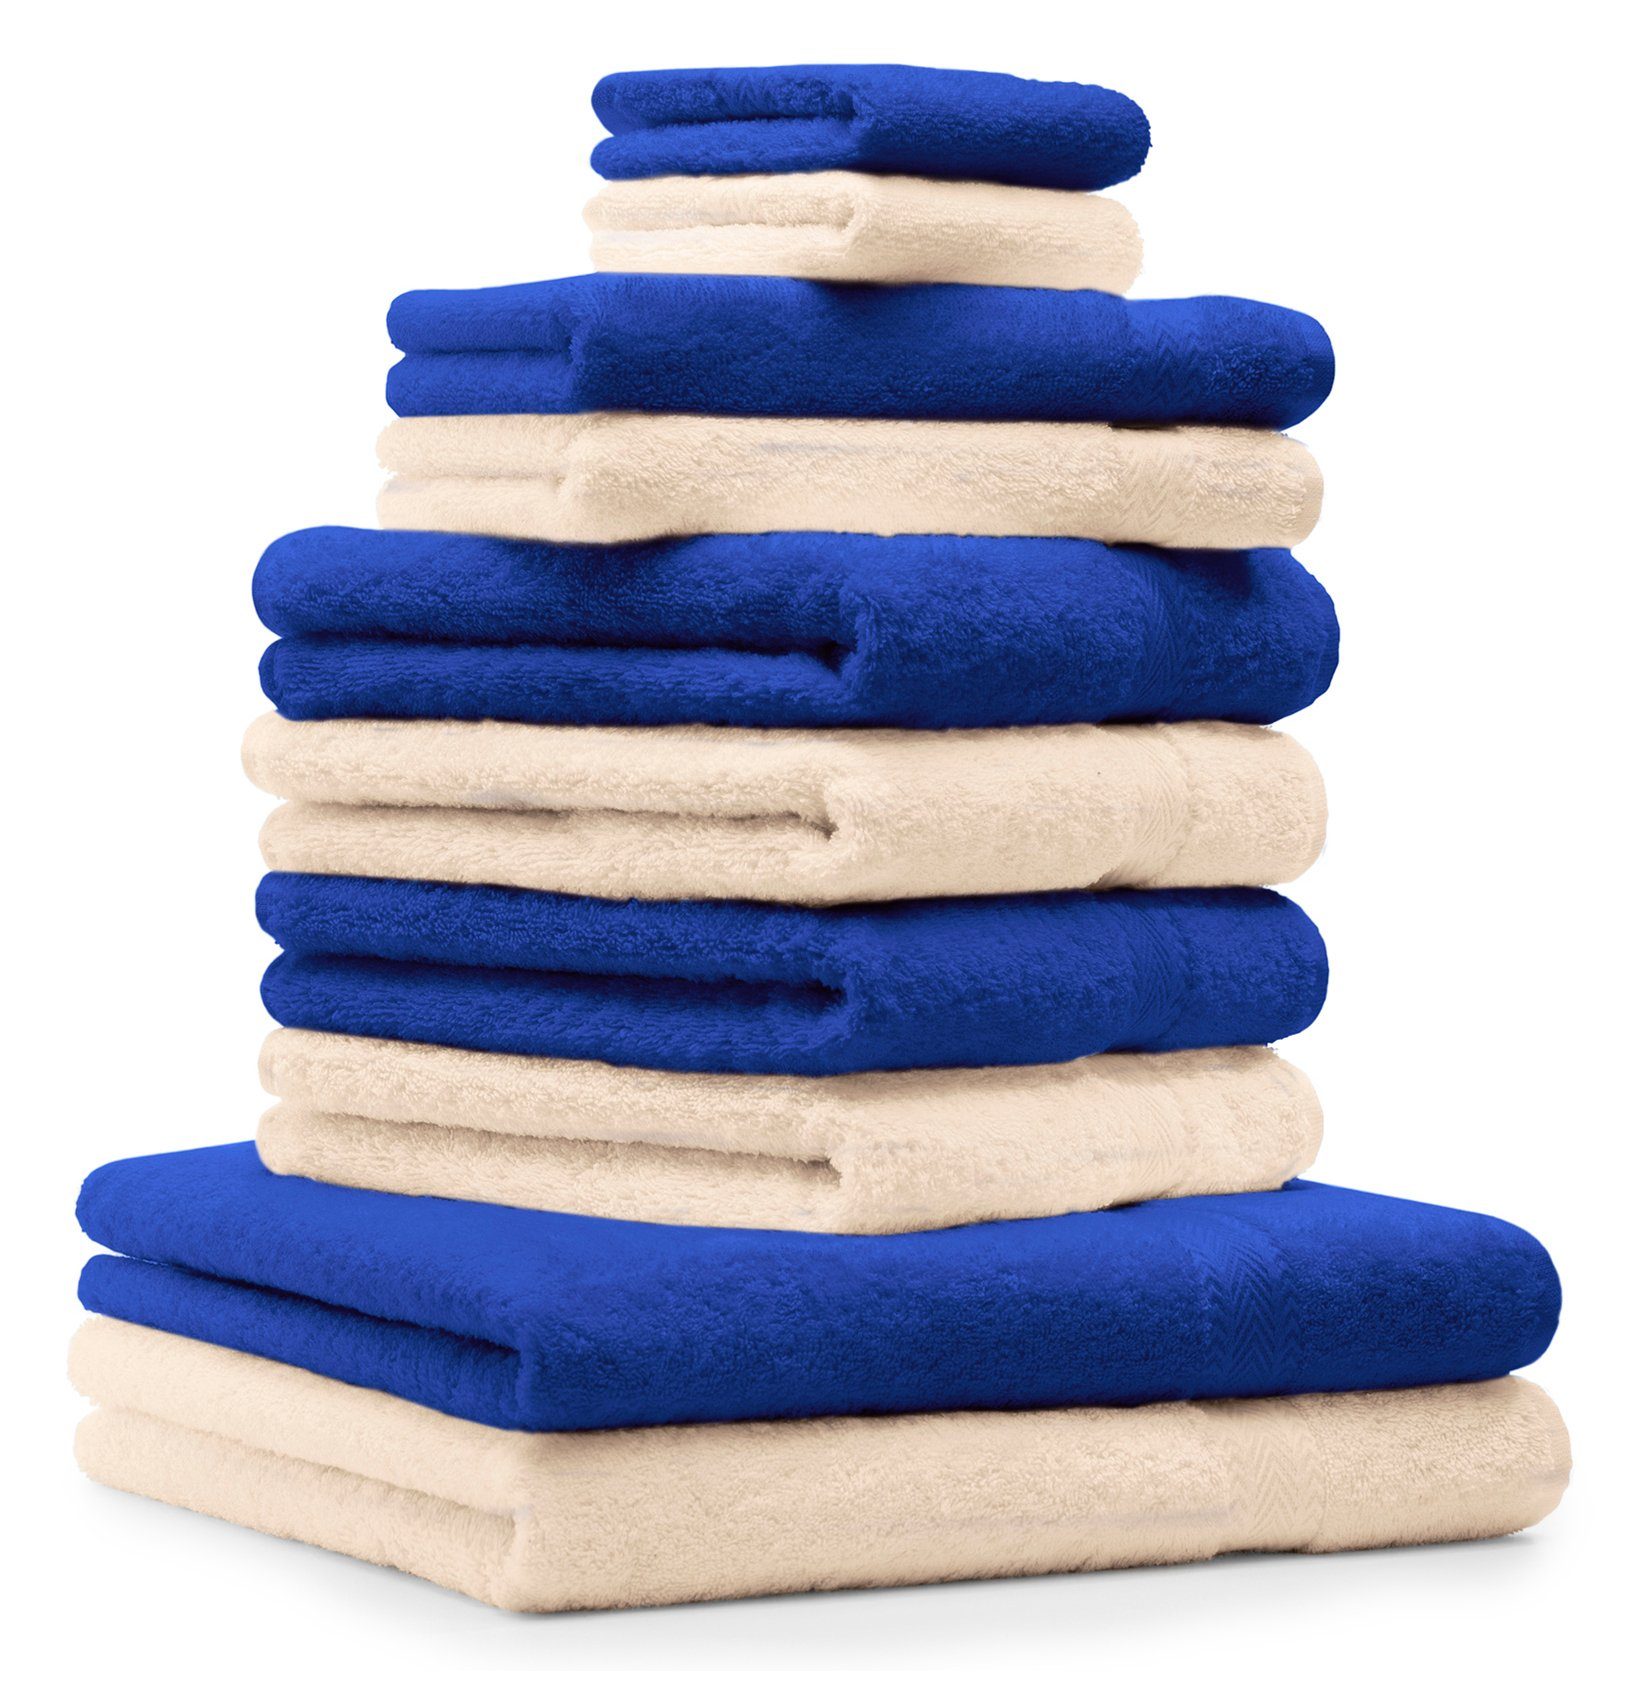 Betz Handtuch Set 10-TLG. Handtuch-Set CLASSIC 100% Baumwolle Farbe royalblau und beige, 100% Baumwolle